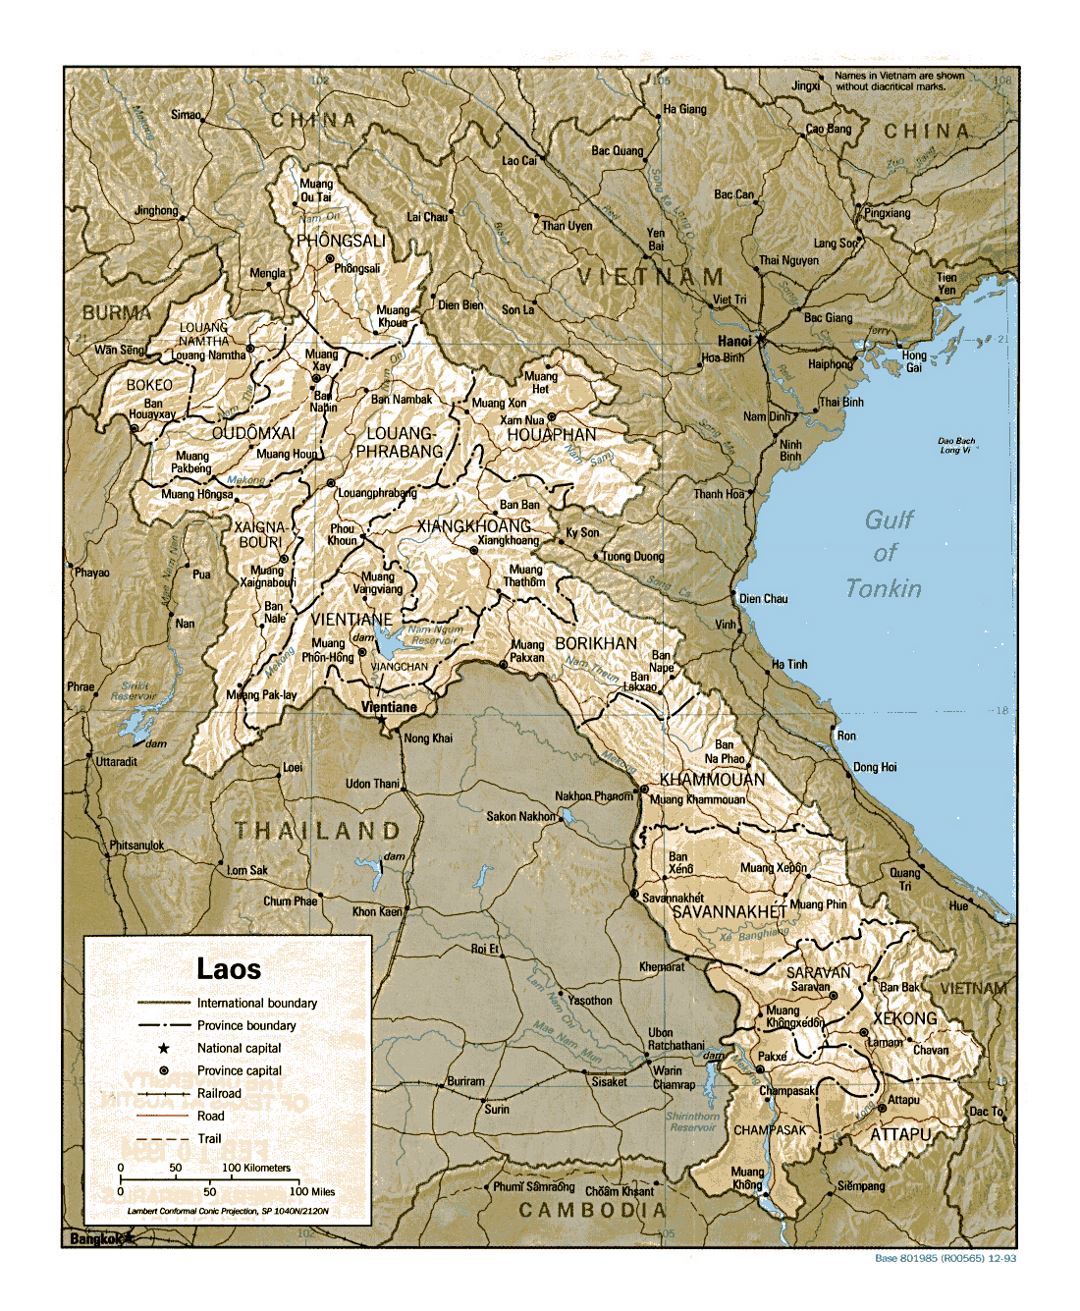 Detallado mapa político y administrativo de Laos con relieve, carreteras, ferrocarriles y principales ciudades - 1993